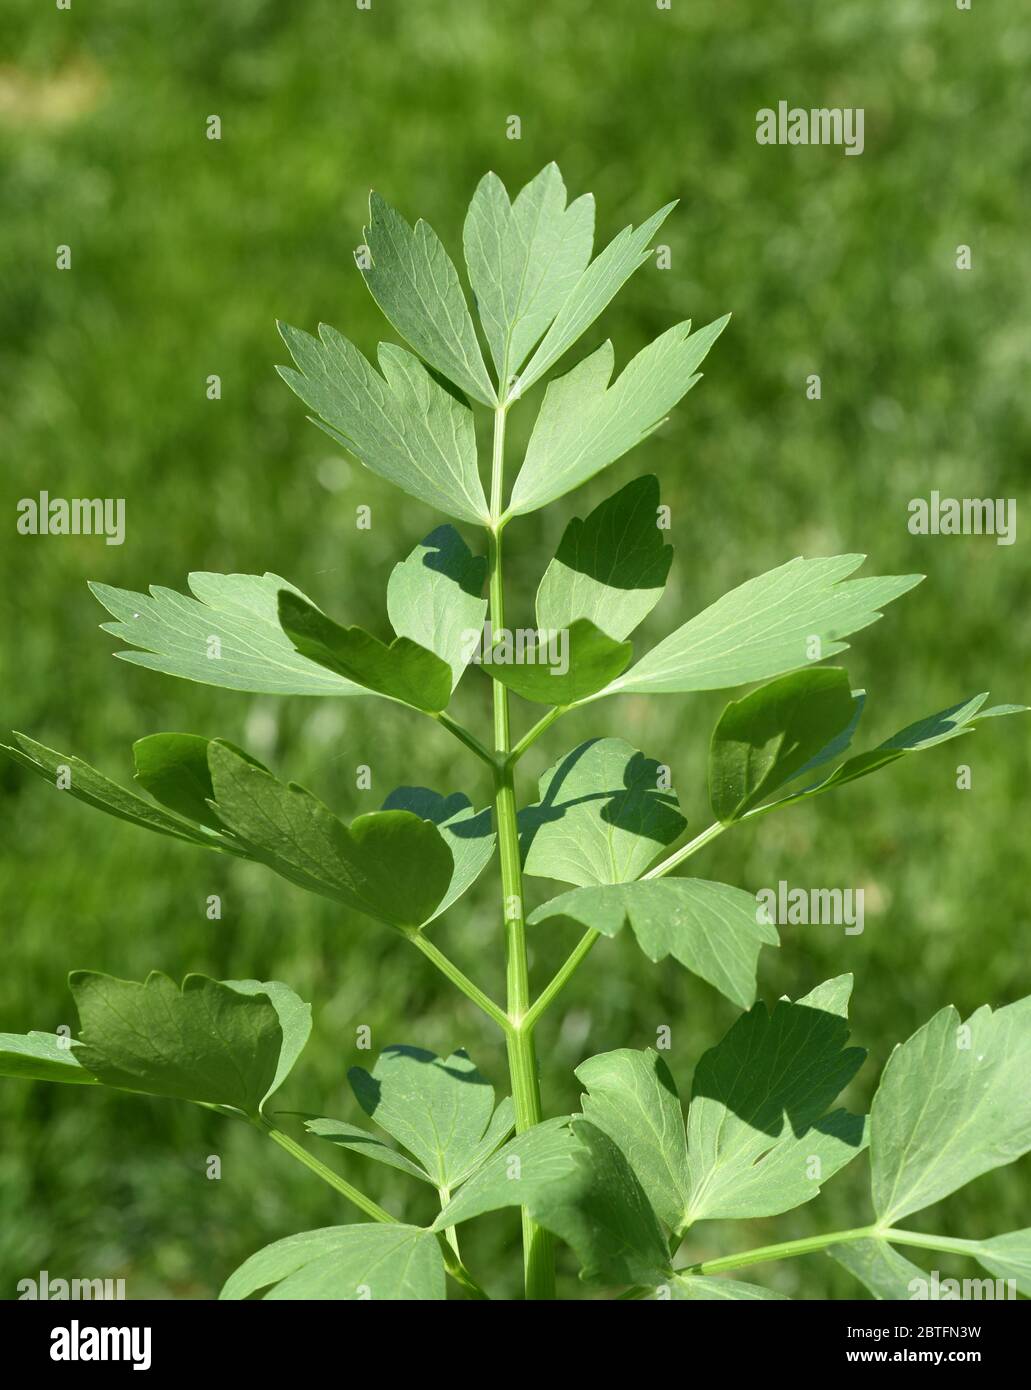 Liebstoeckel ist eine winterharte, ausdauernde, krautige Pflanze, die Wuchshoehen von 1 bis 2,5 m erreichen kann und eine sehr aromatische Gewuerzpfla Stock Photo